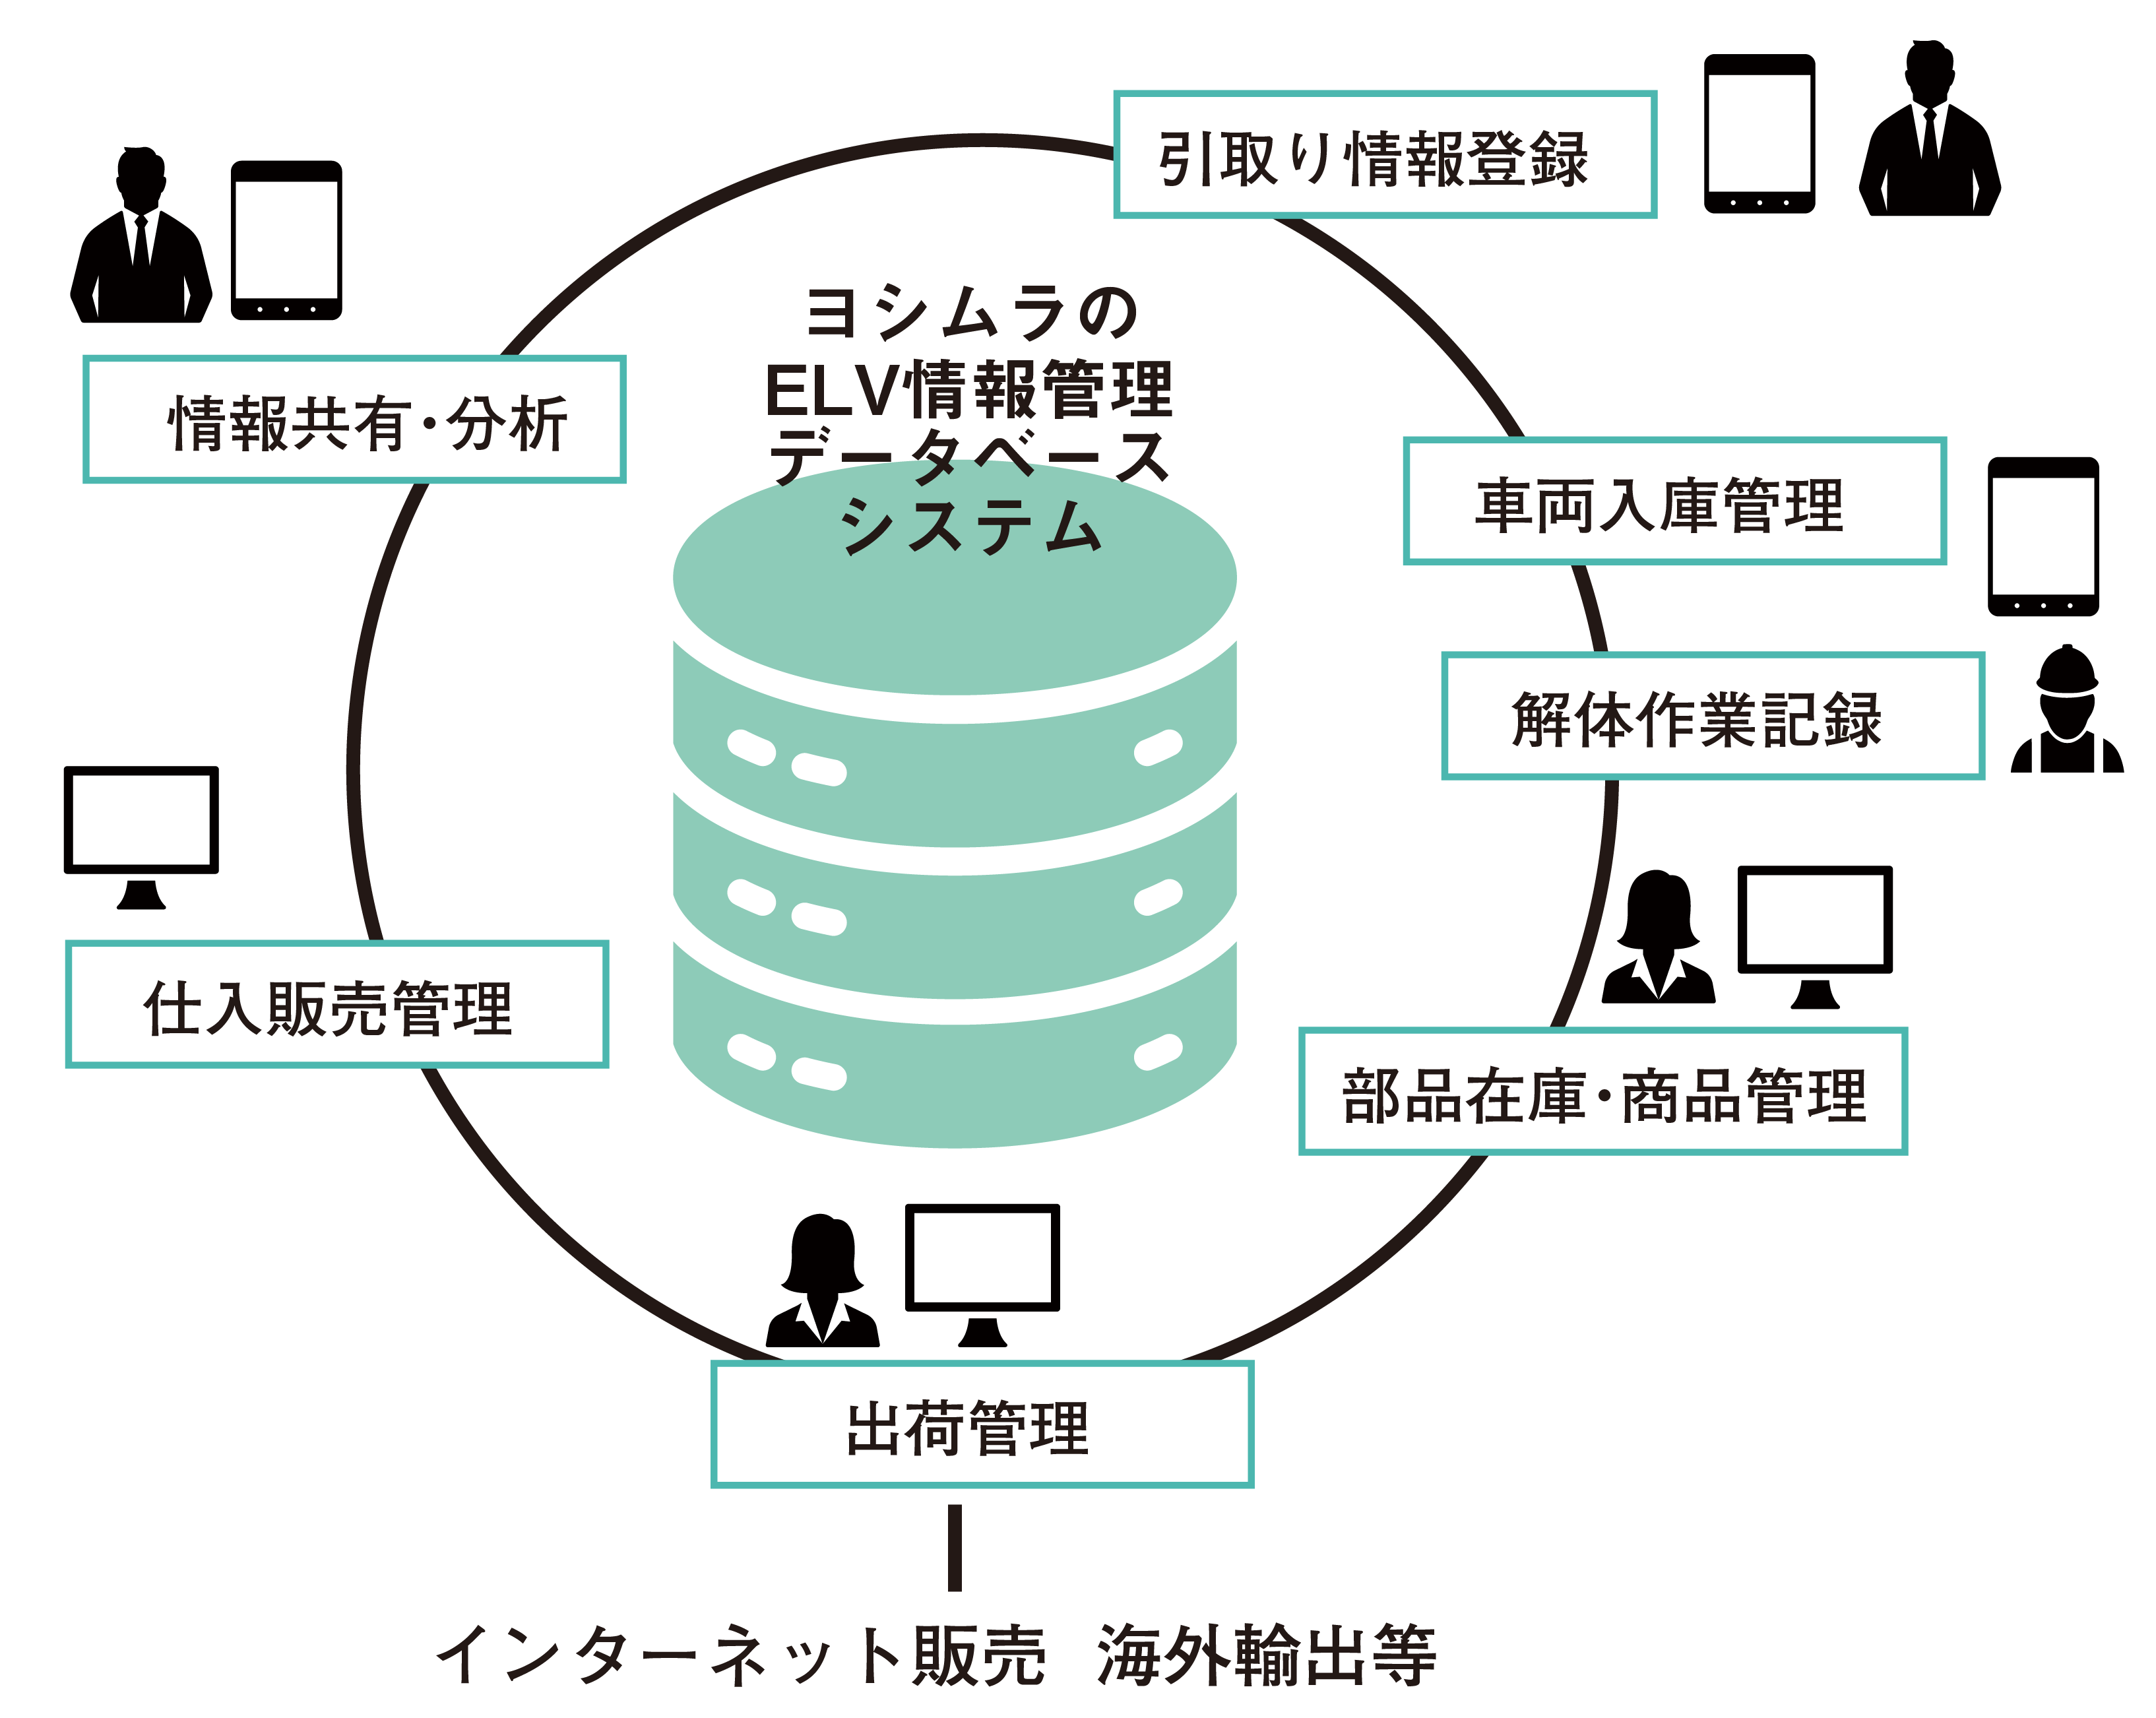 ヨシムラのELV情報管理データベースシステム